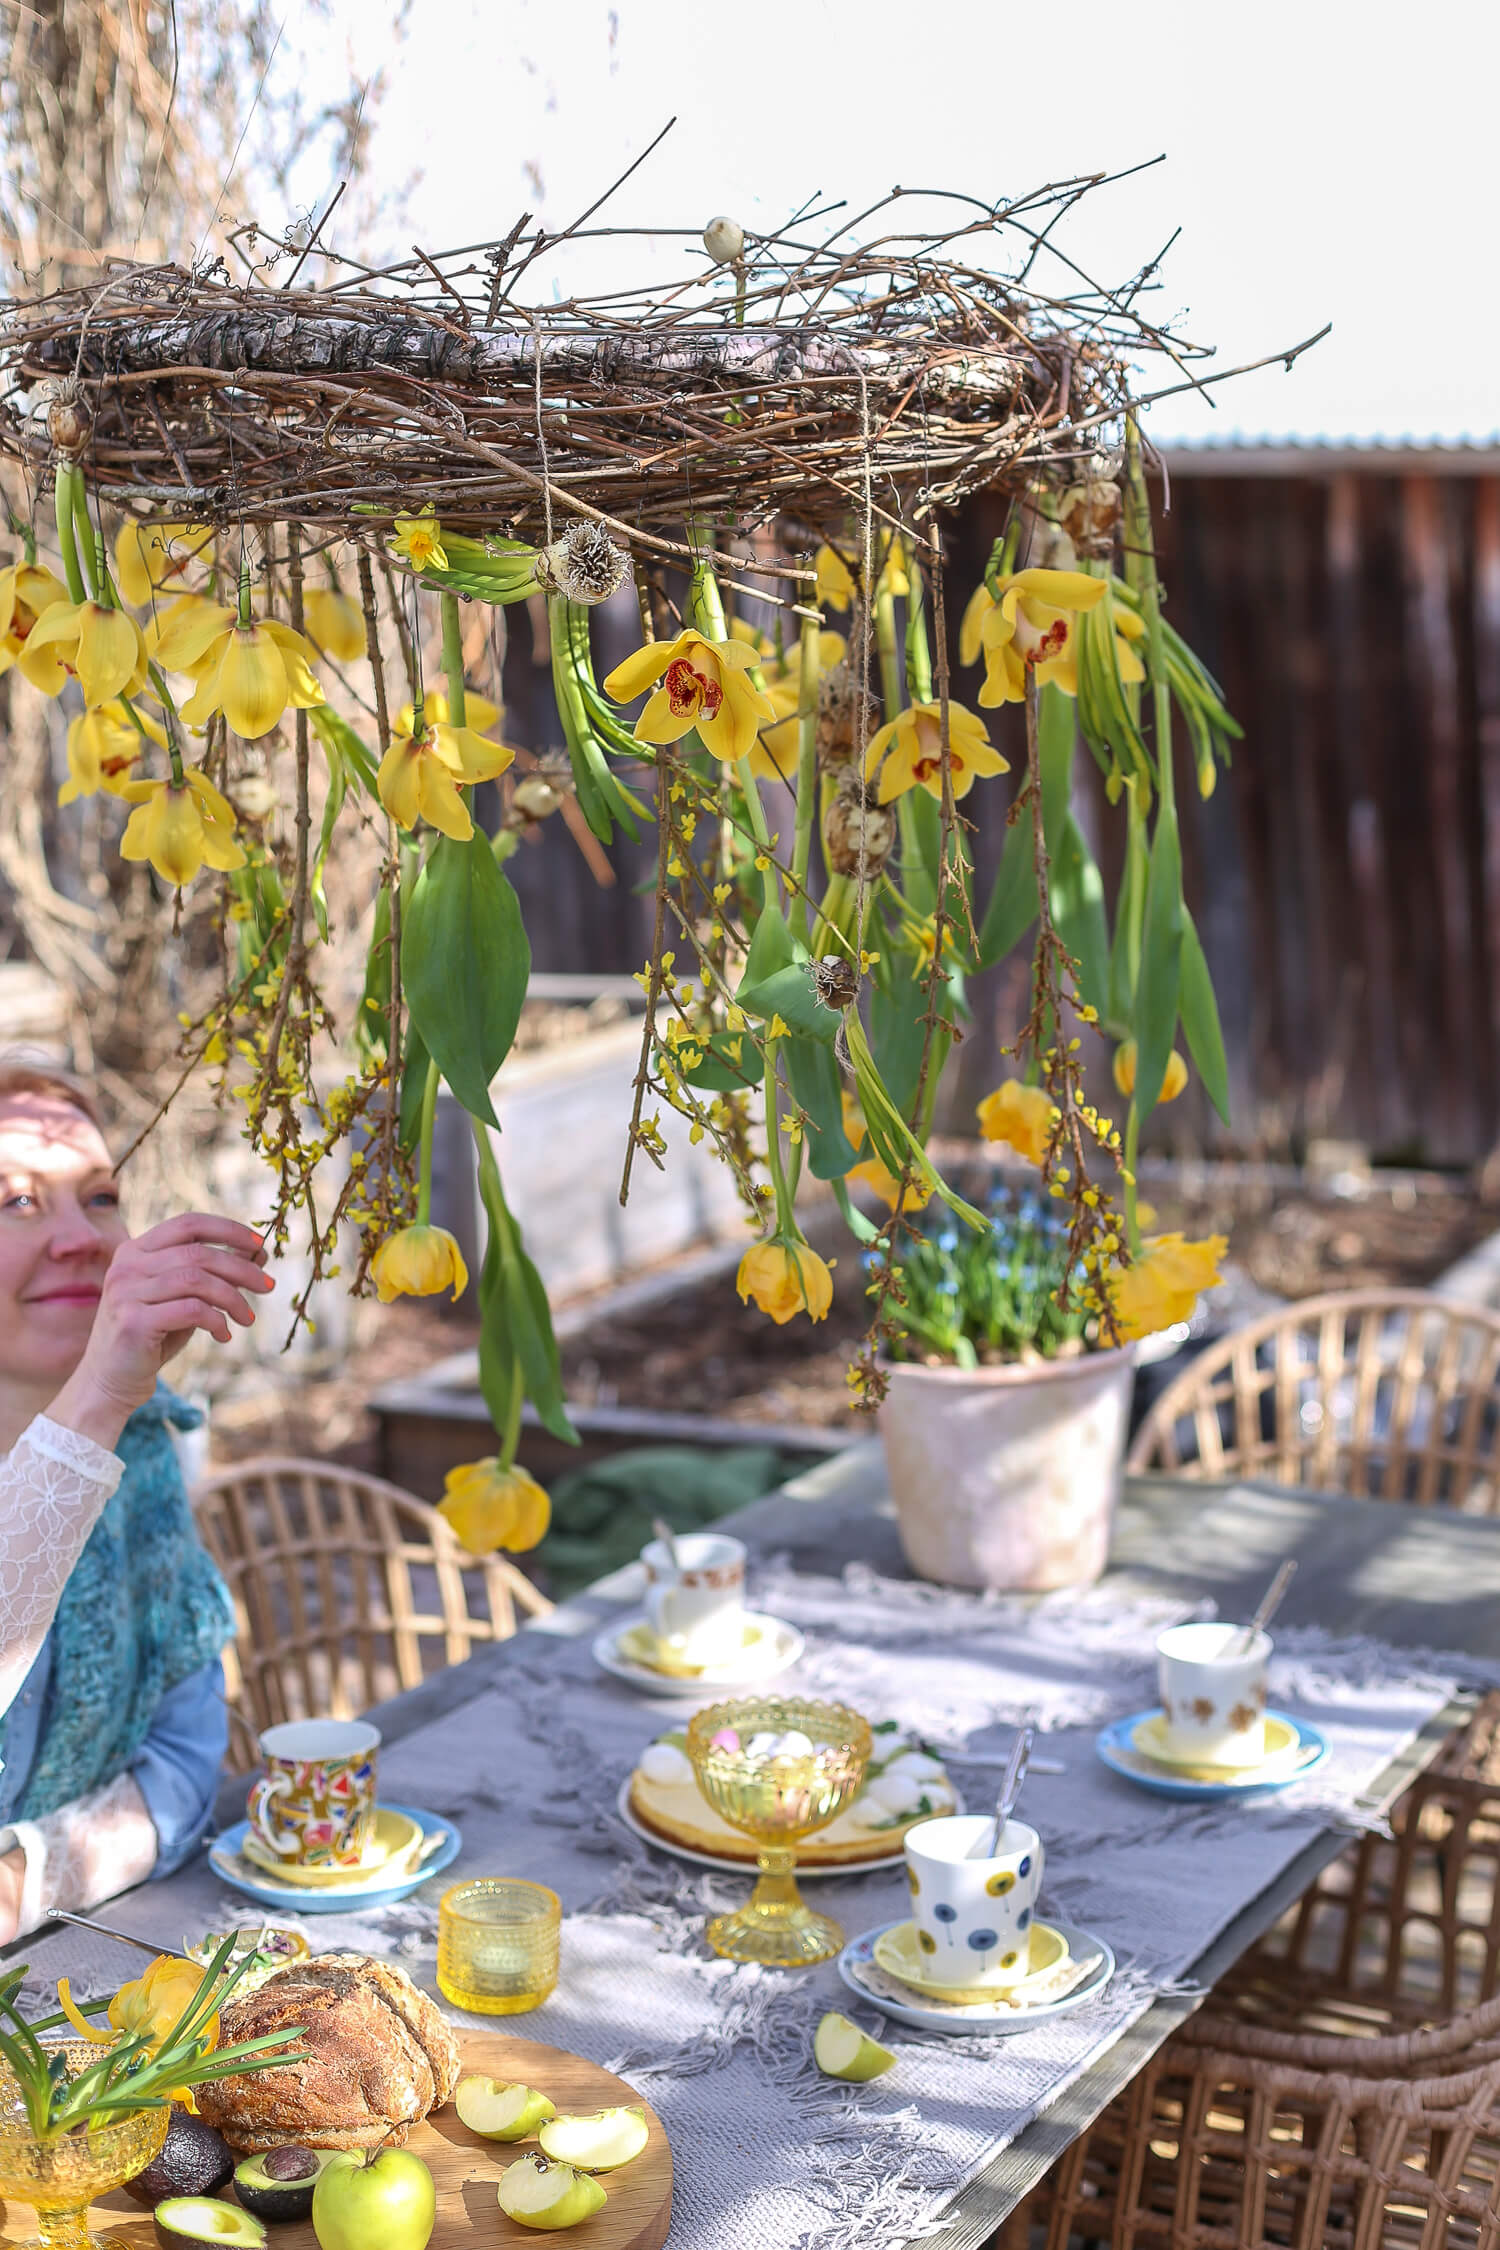 pääsiäiskahvit katetaan puutarhan pöydälle ja koristellaan roikkuvalla kukkakattokruunulla